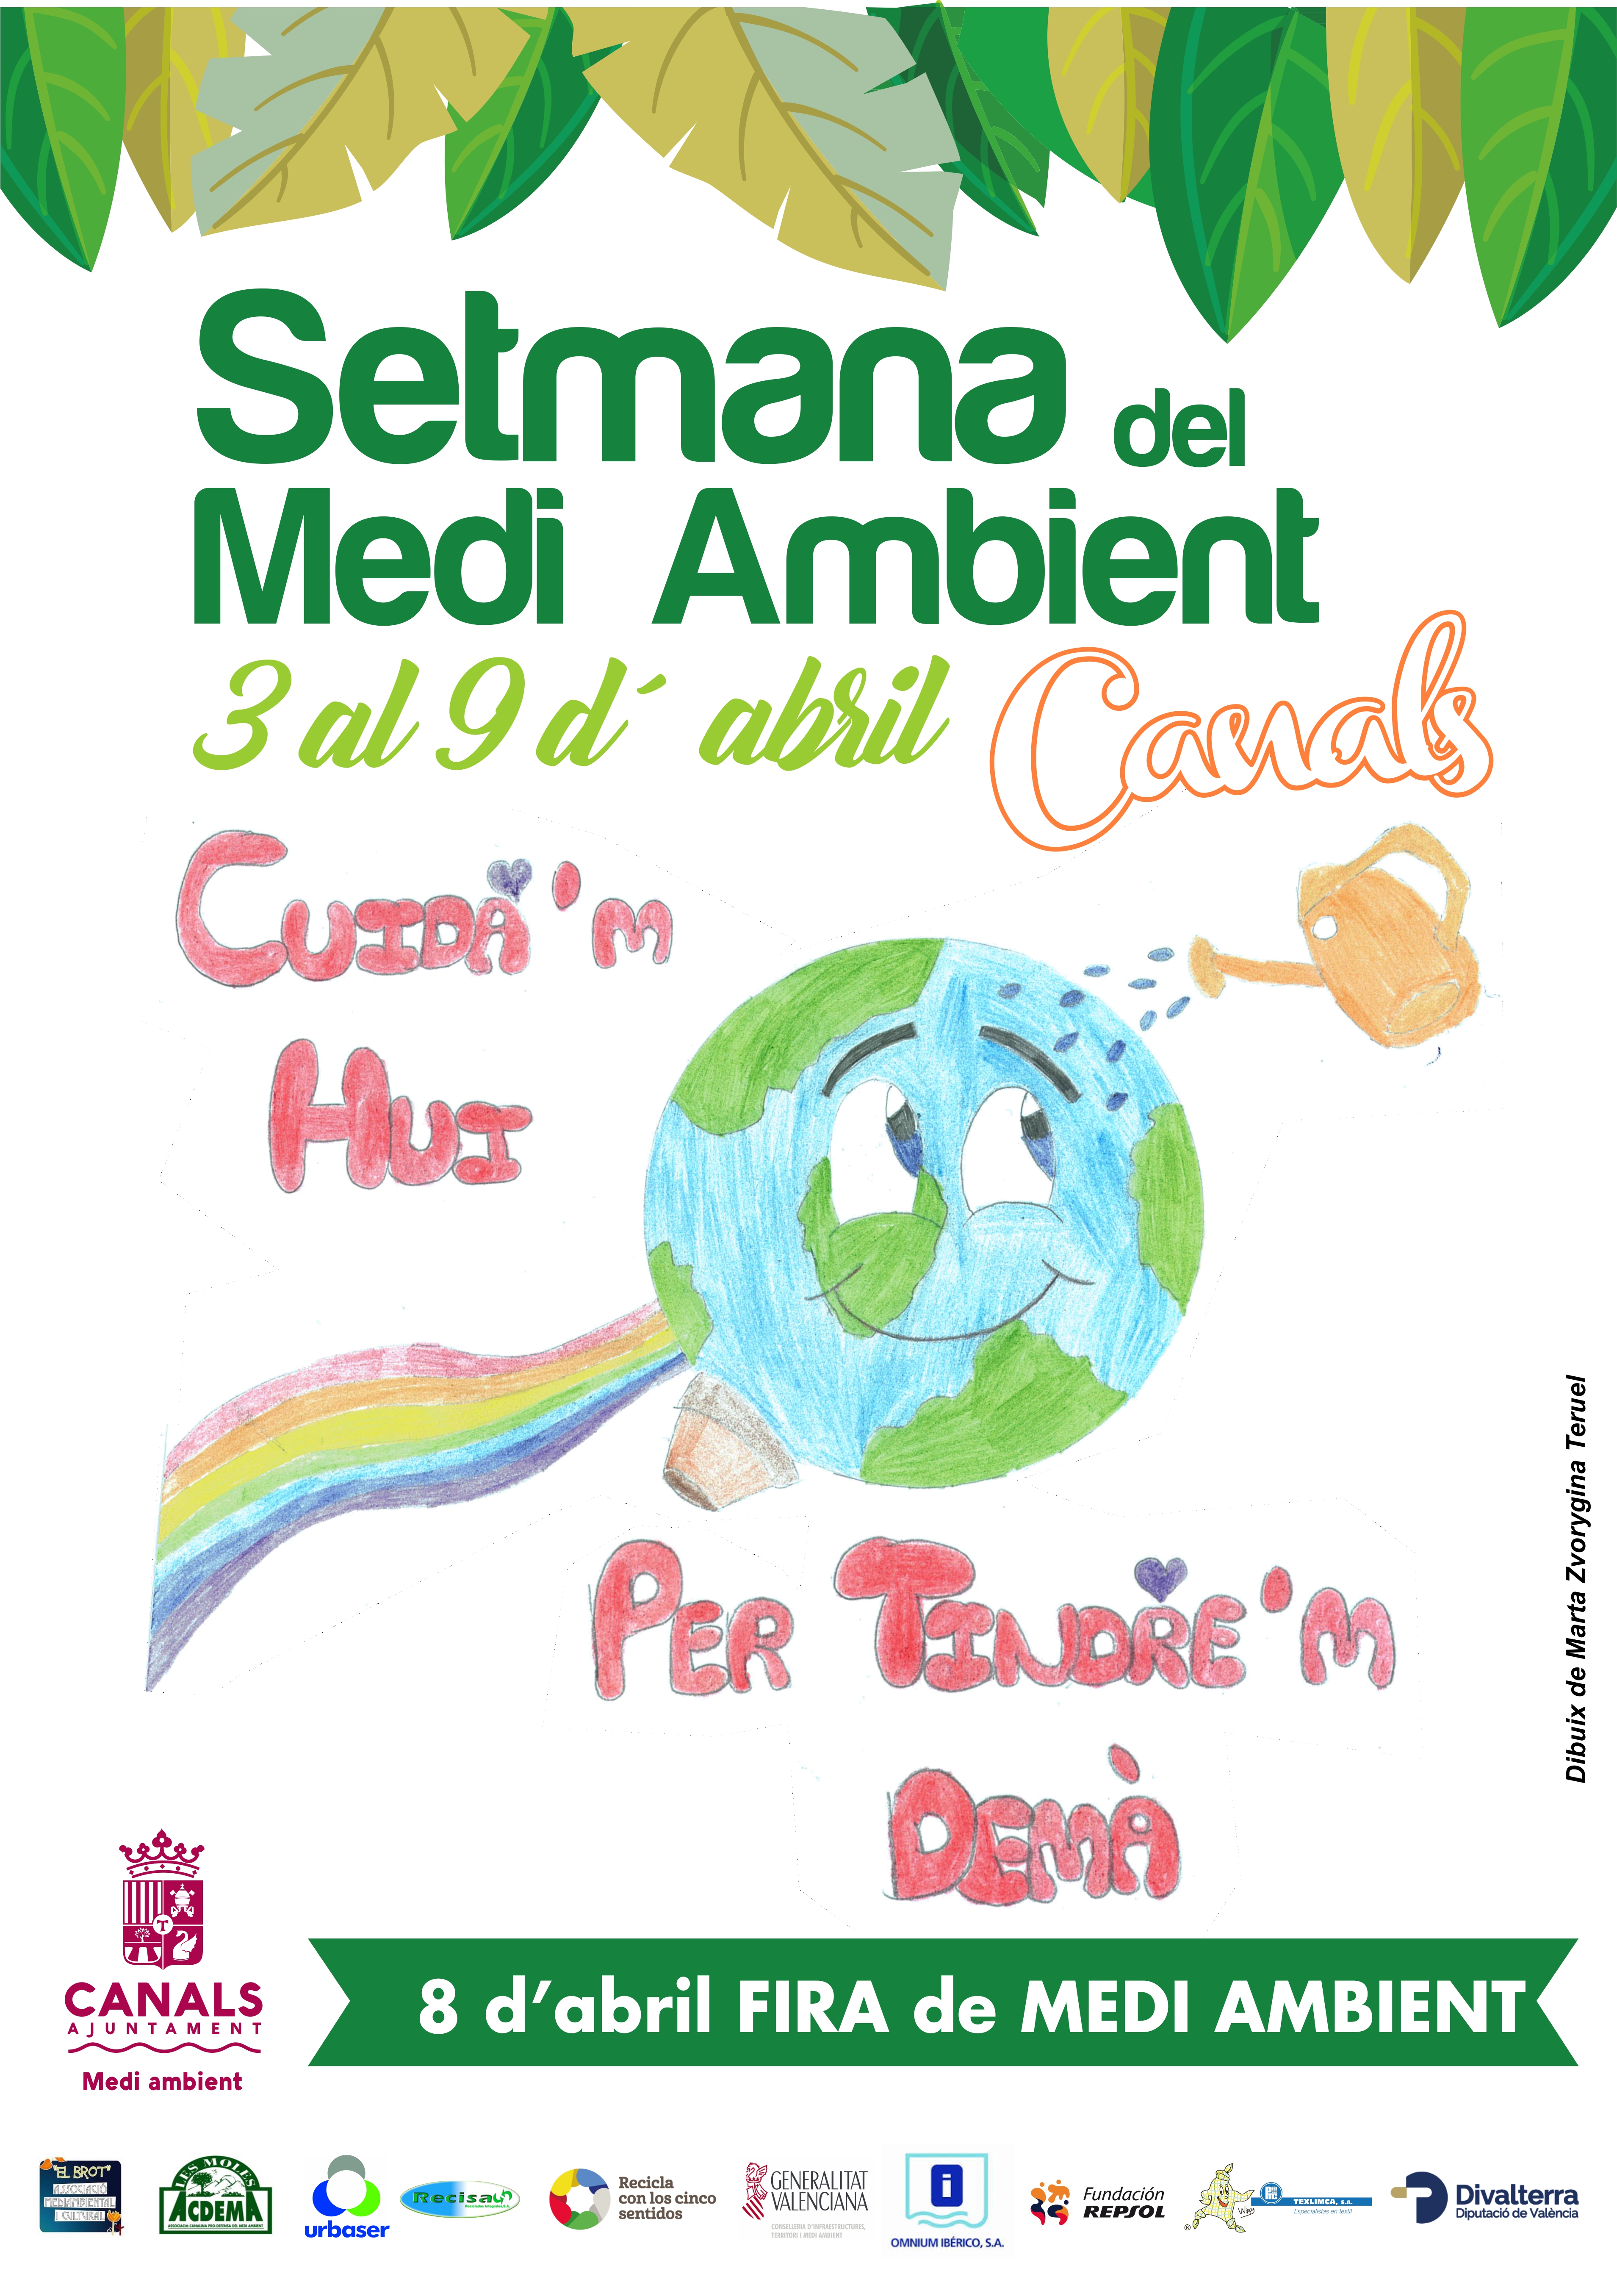 2017.03.31 Setmana del Medi Ambient. Ajuntament de Canals.